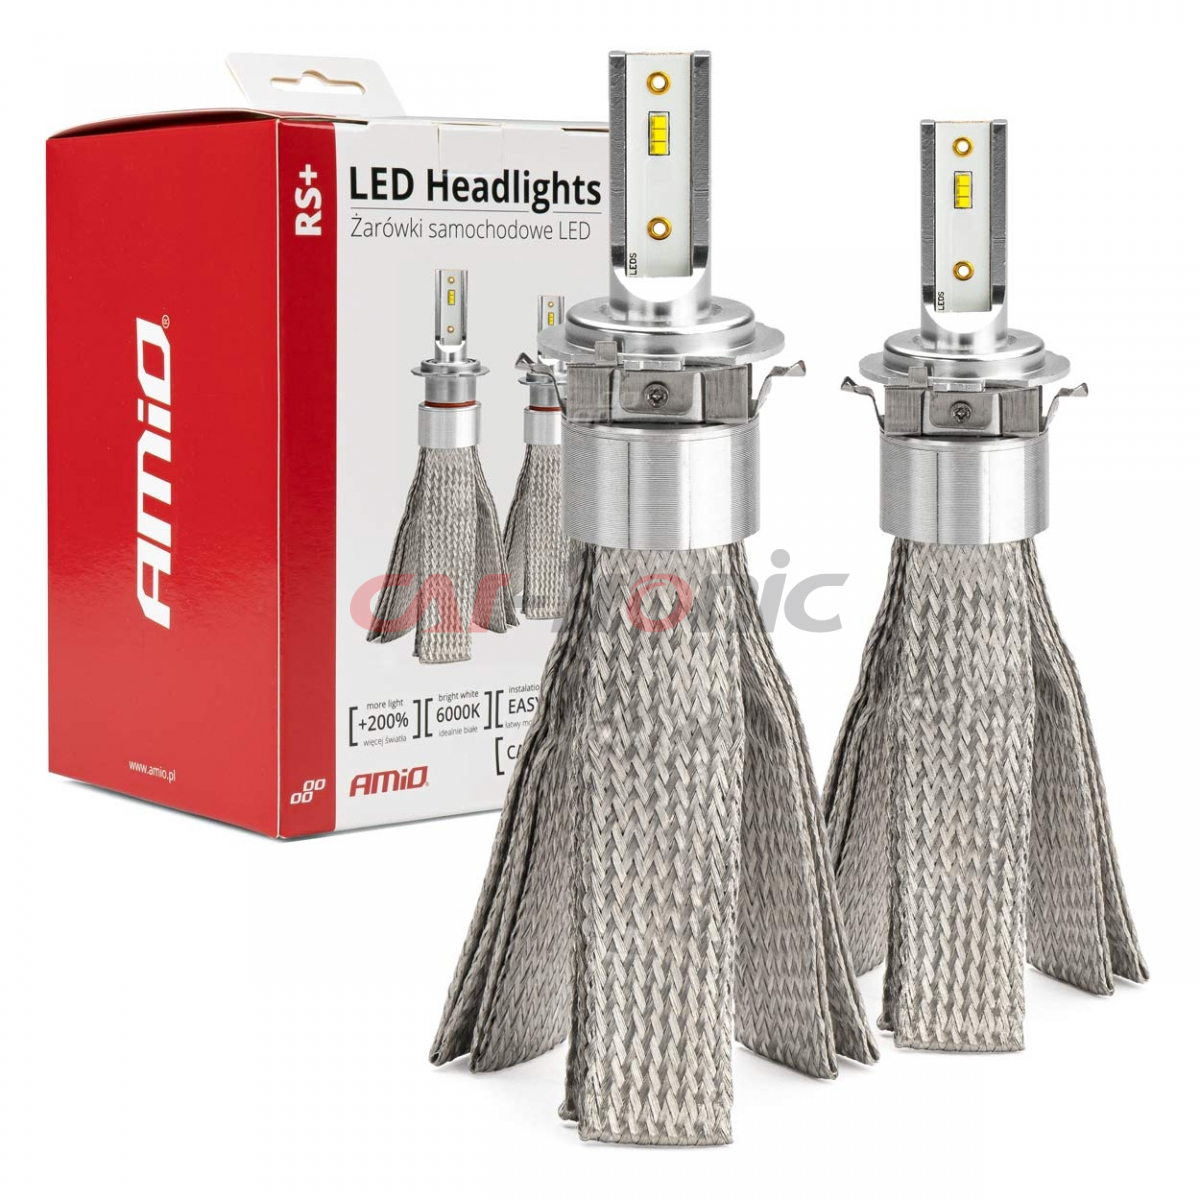 Żarówki samochodowe LED seria RS+ canbus H7-6 50W slim AMIO-01085